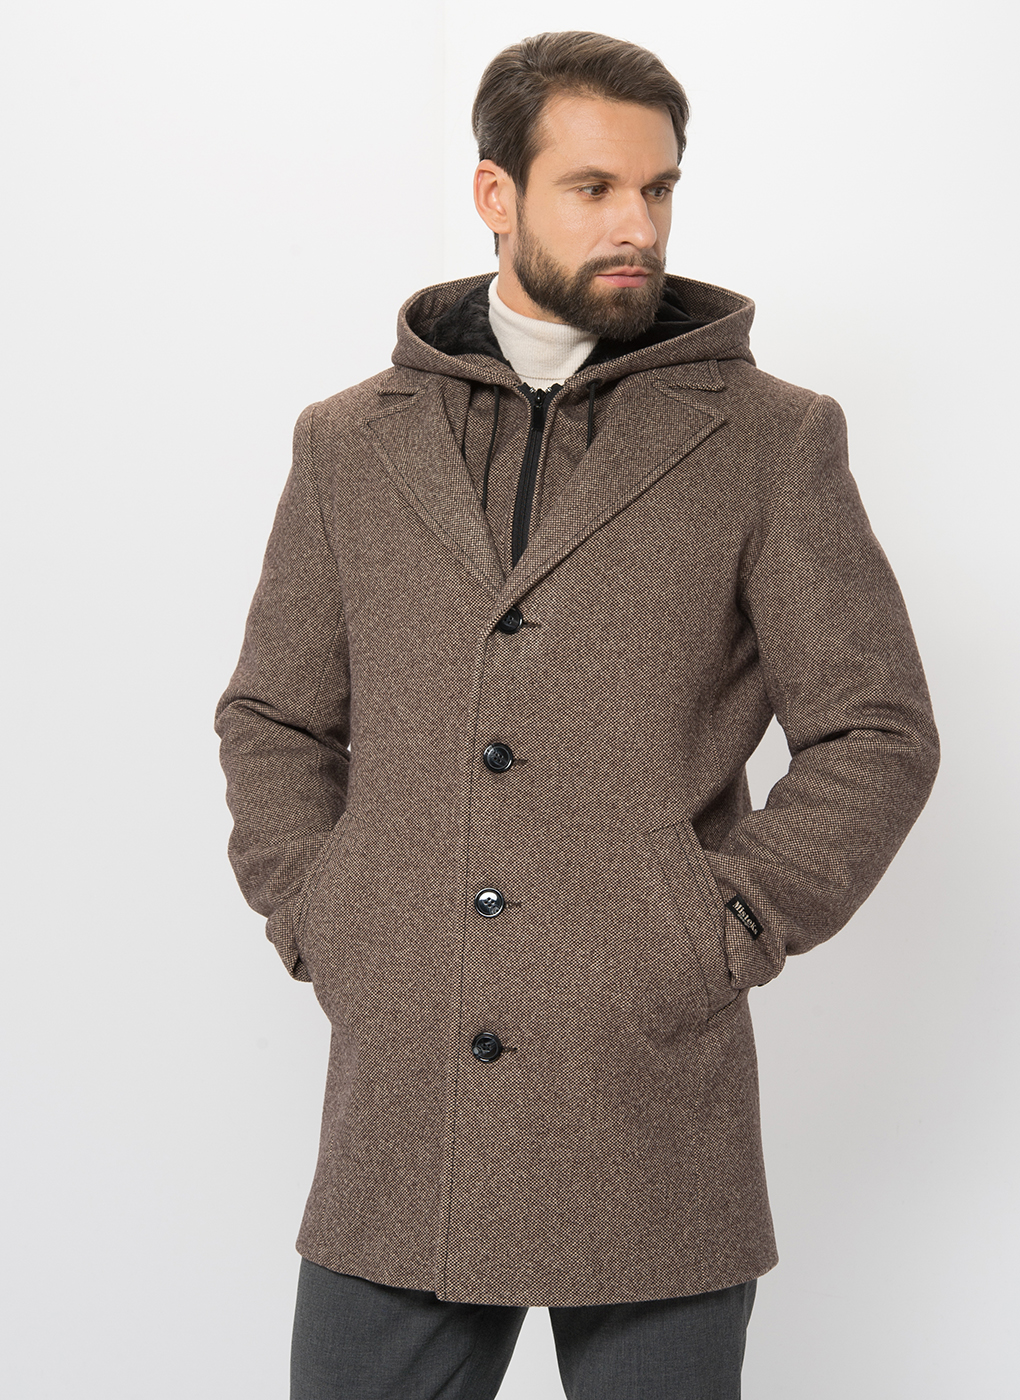 Пальто мужское MISTEKS DESIGN 59019 коричневое 56 RU